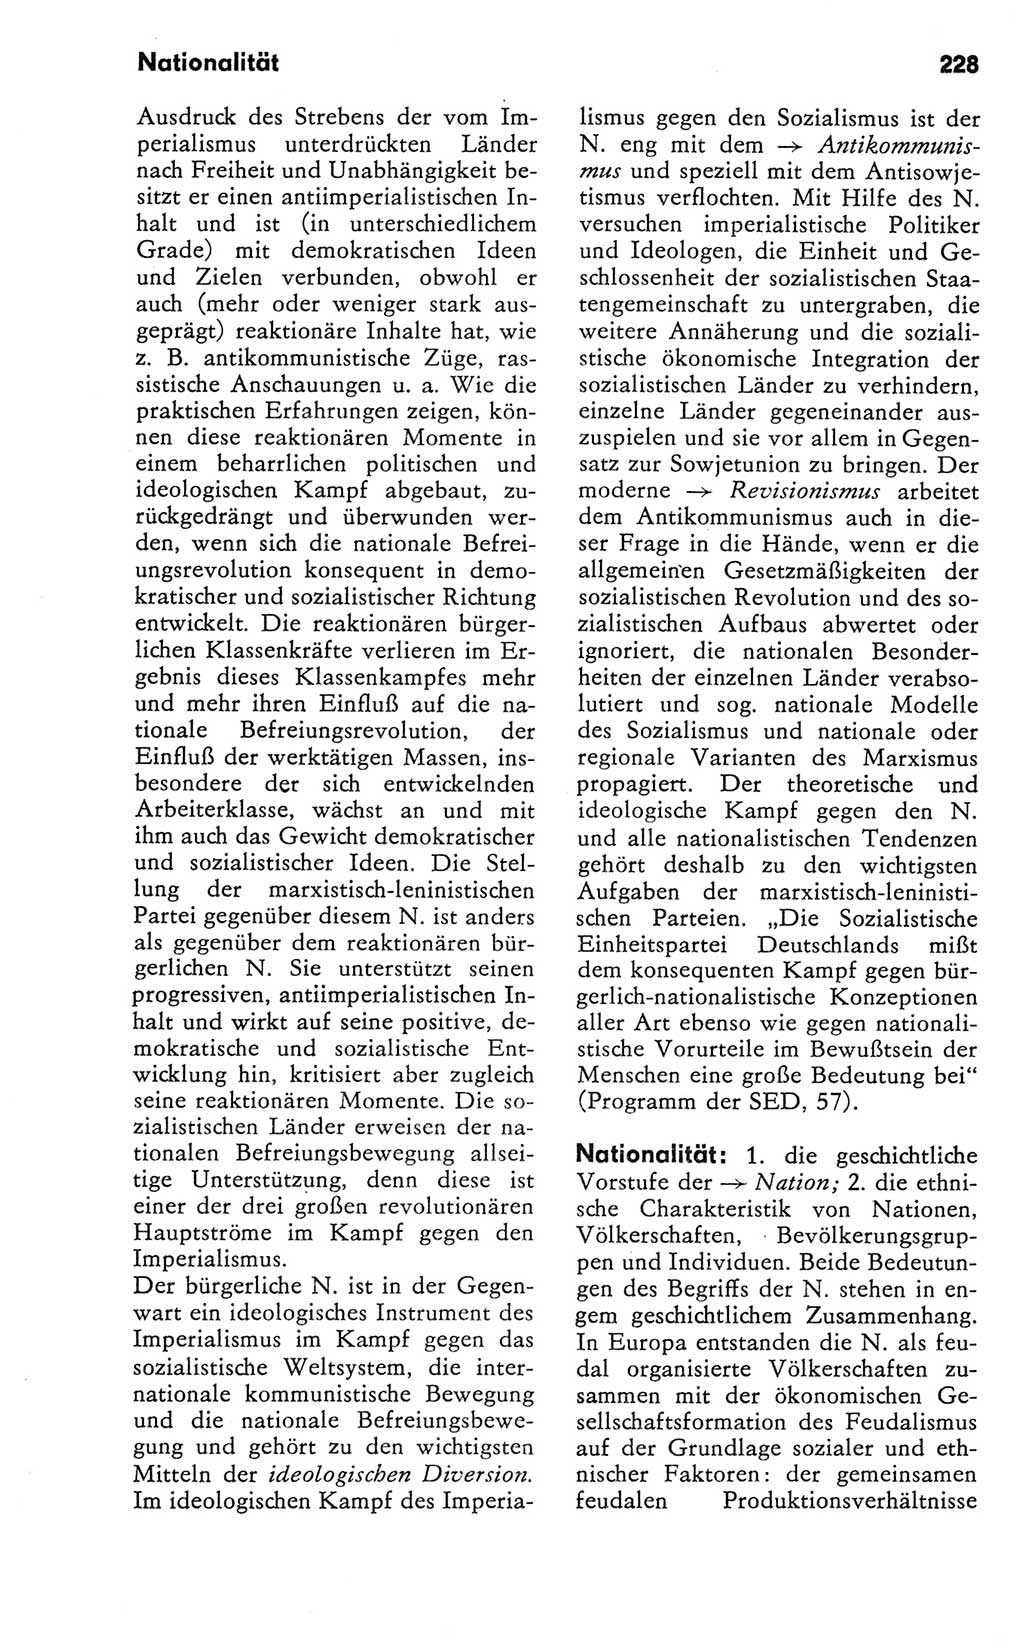 Kleines Wörterbuch der marxistisch-leninistischen Philosophie [Deutsche Demokratische Republik (DDR)] 1981, Seite 228 (Kl. Wb. ML Phil. DDR 1981, S. 228)